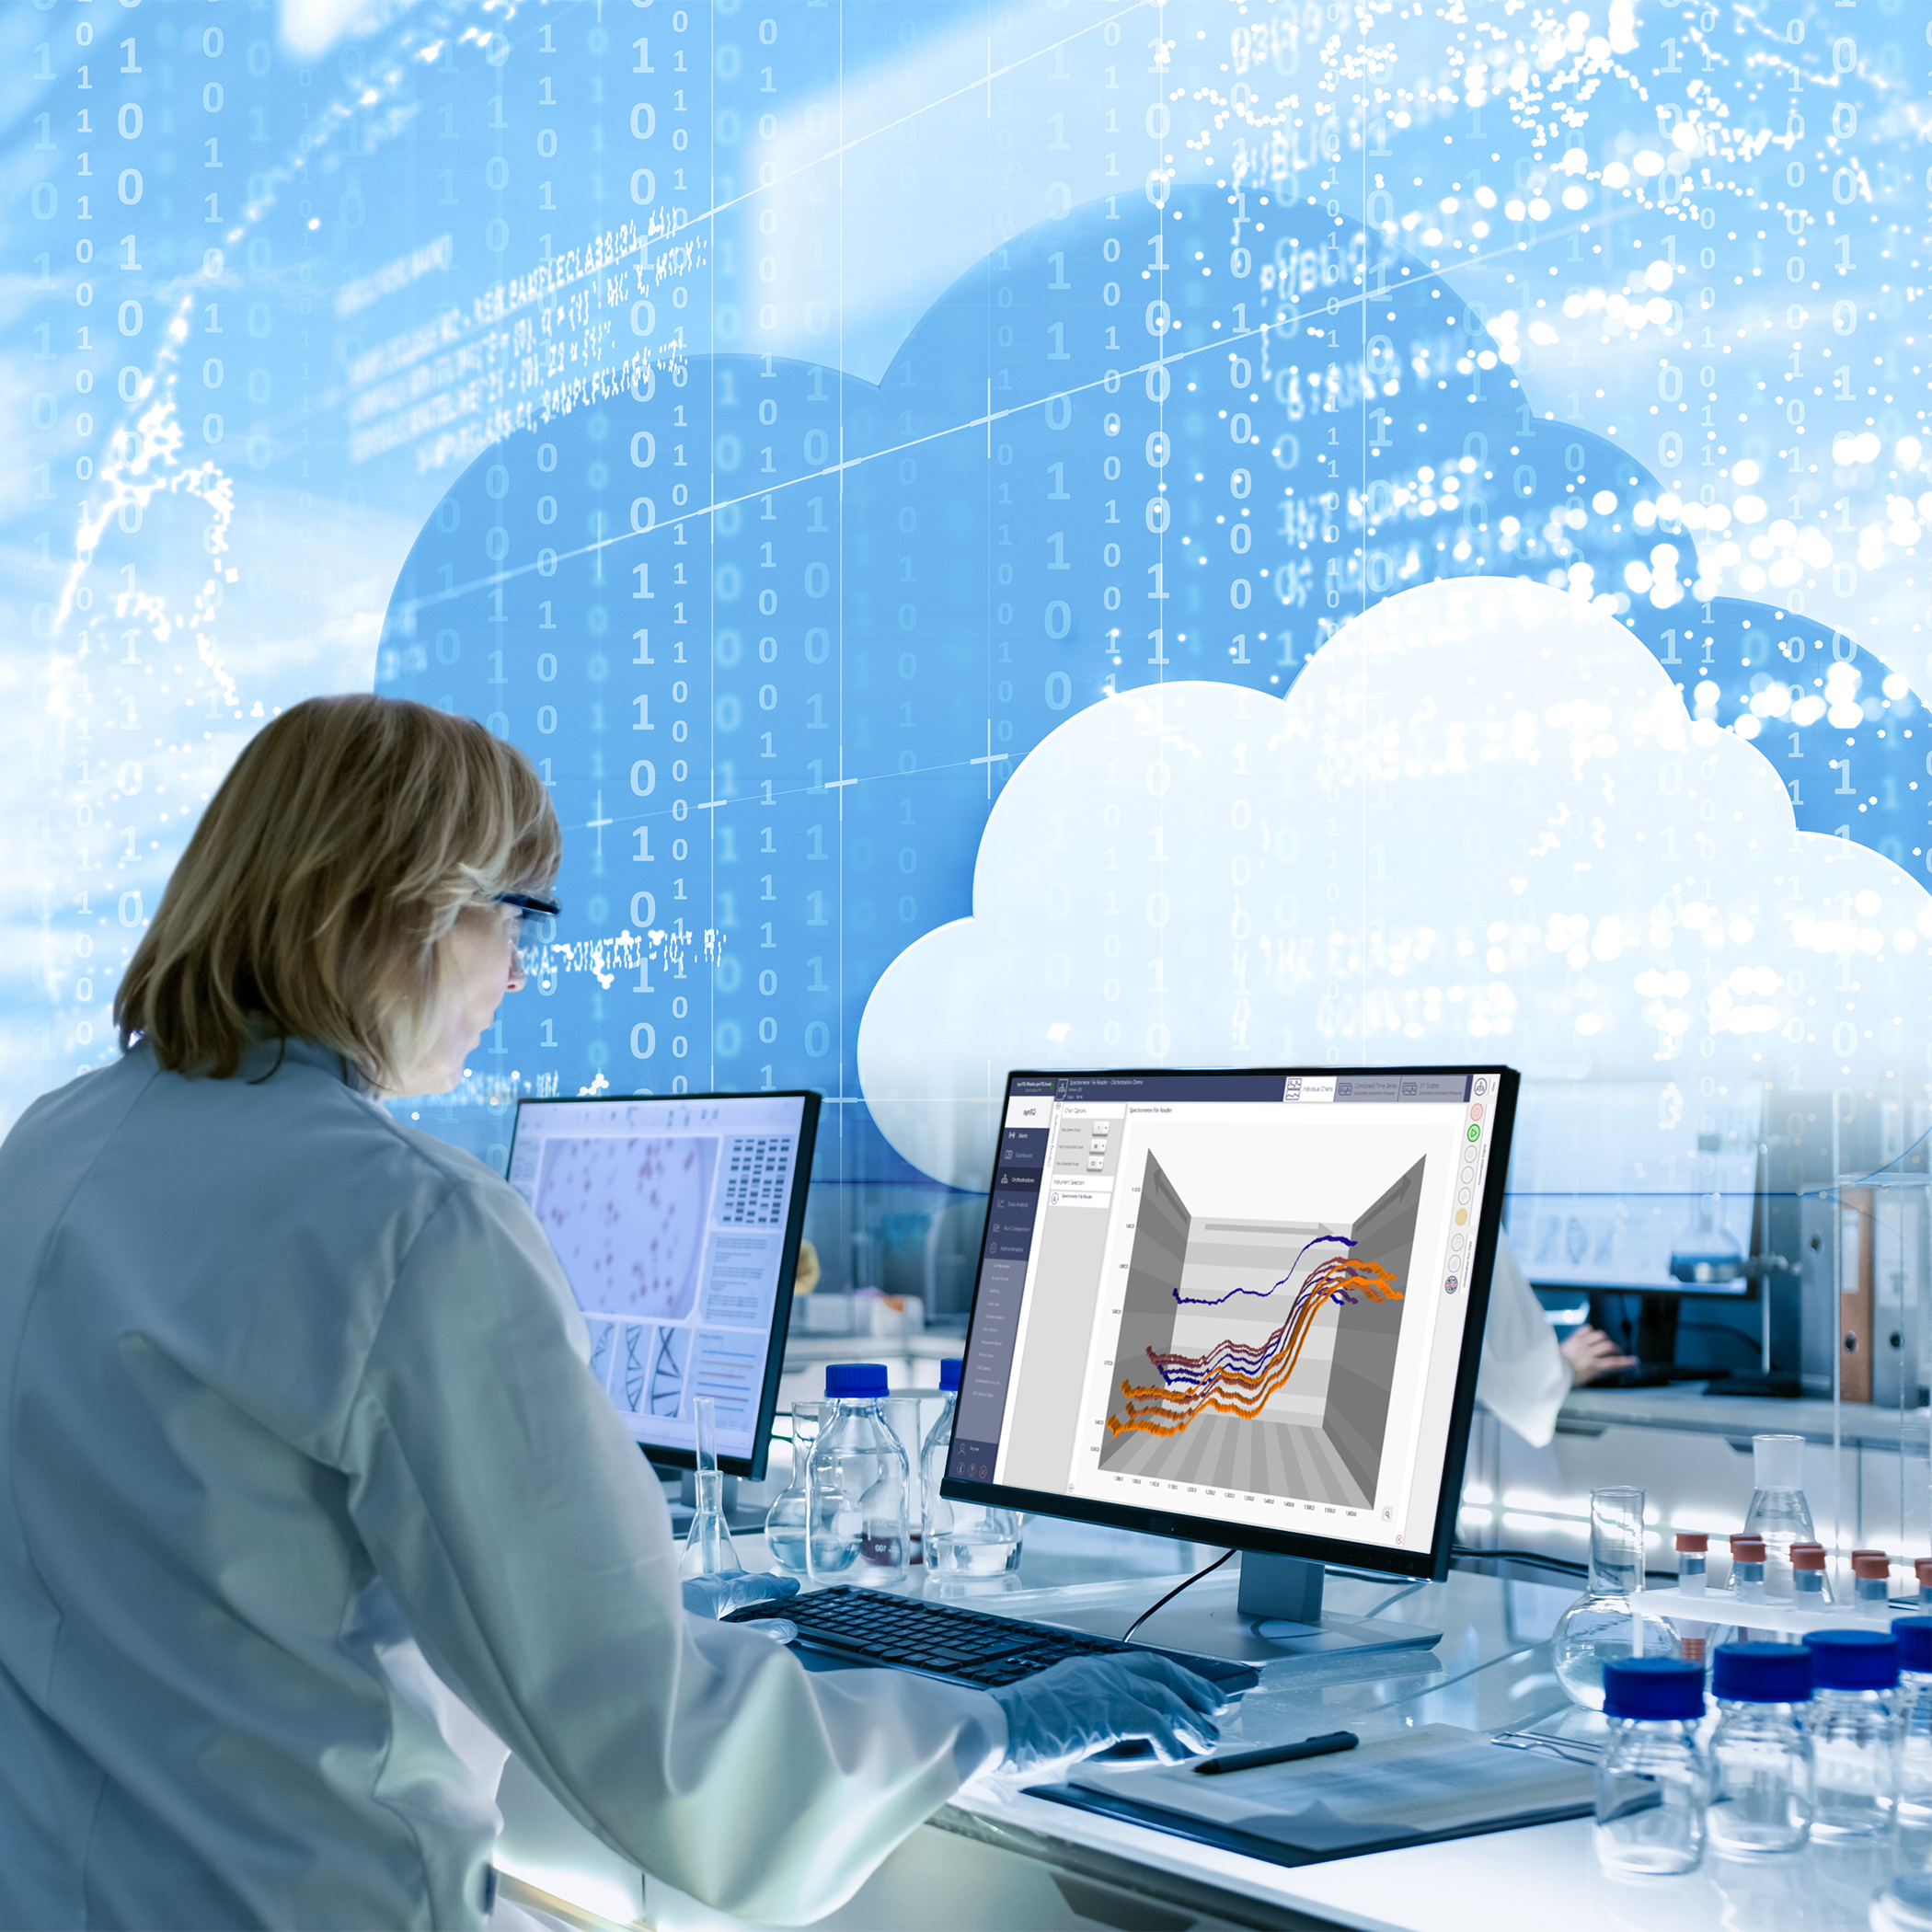 Durch die Integration von Cloud Computing in PAT-Systeme können Hersteller die Prozesslenkung und Qualitätssicherung verbessern und gleichzeitig ihre Compliance-Maßnahmen rationalisieren.